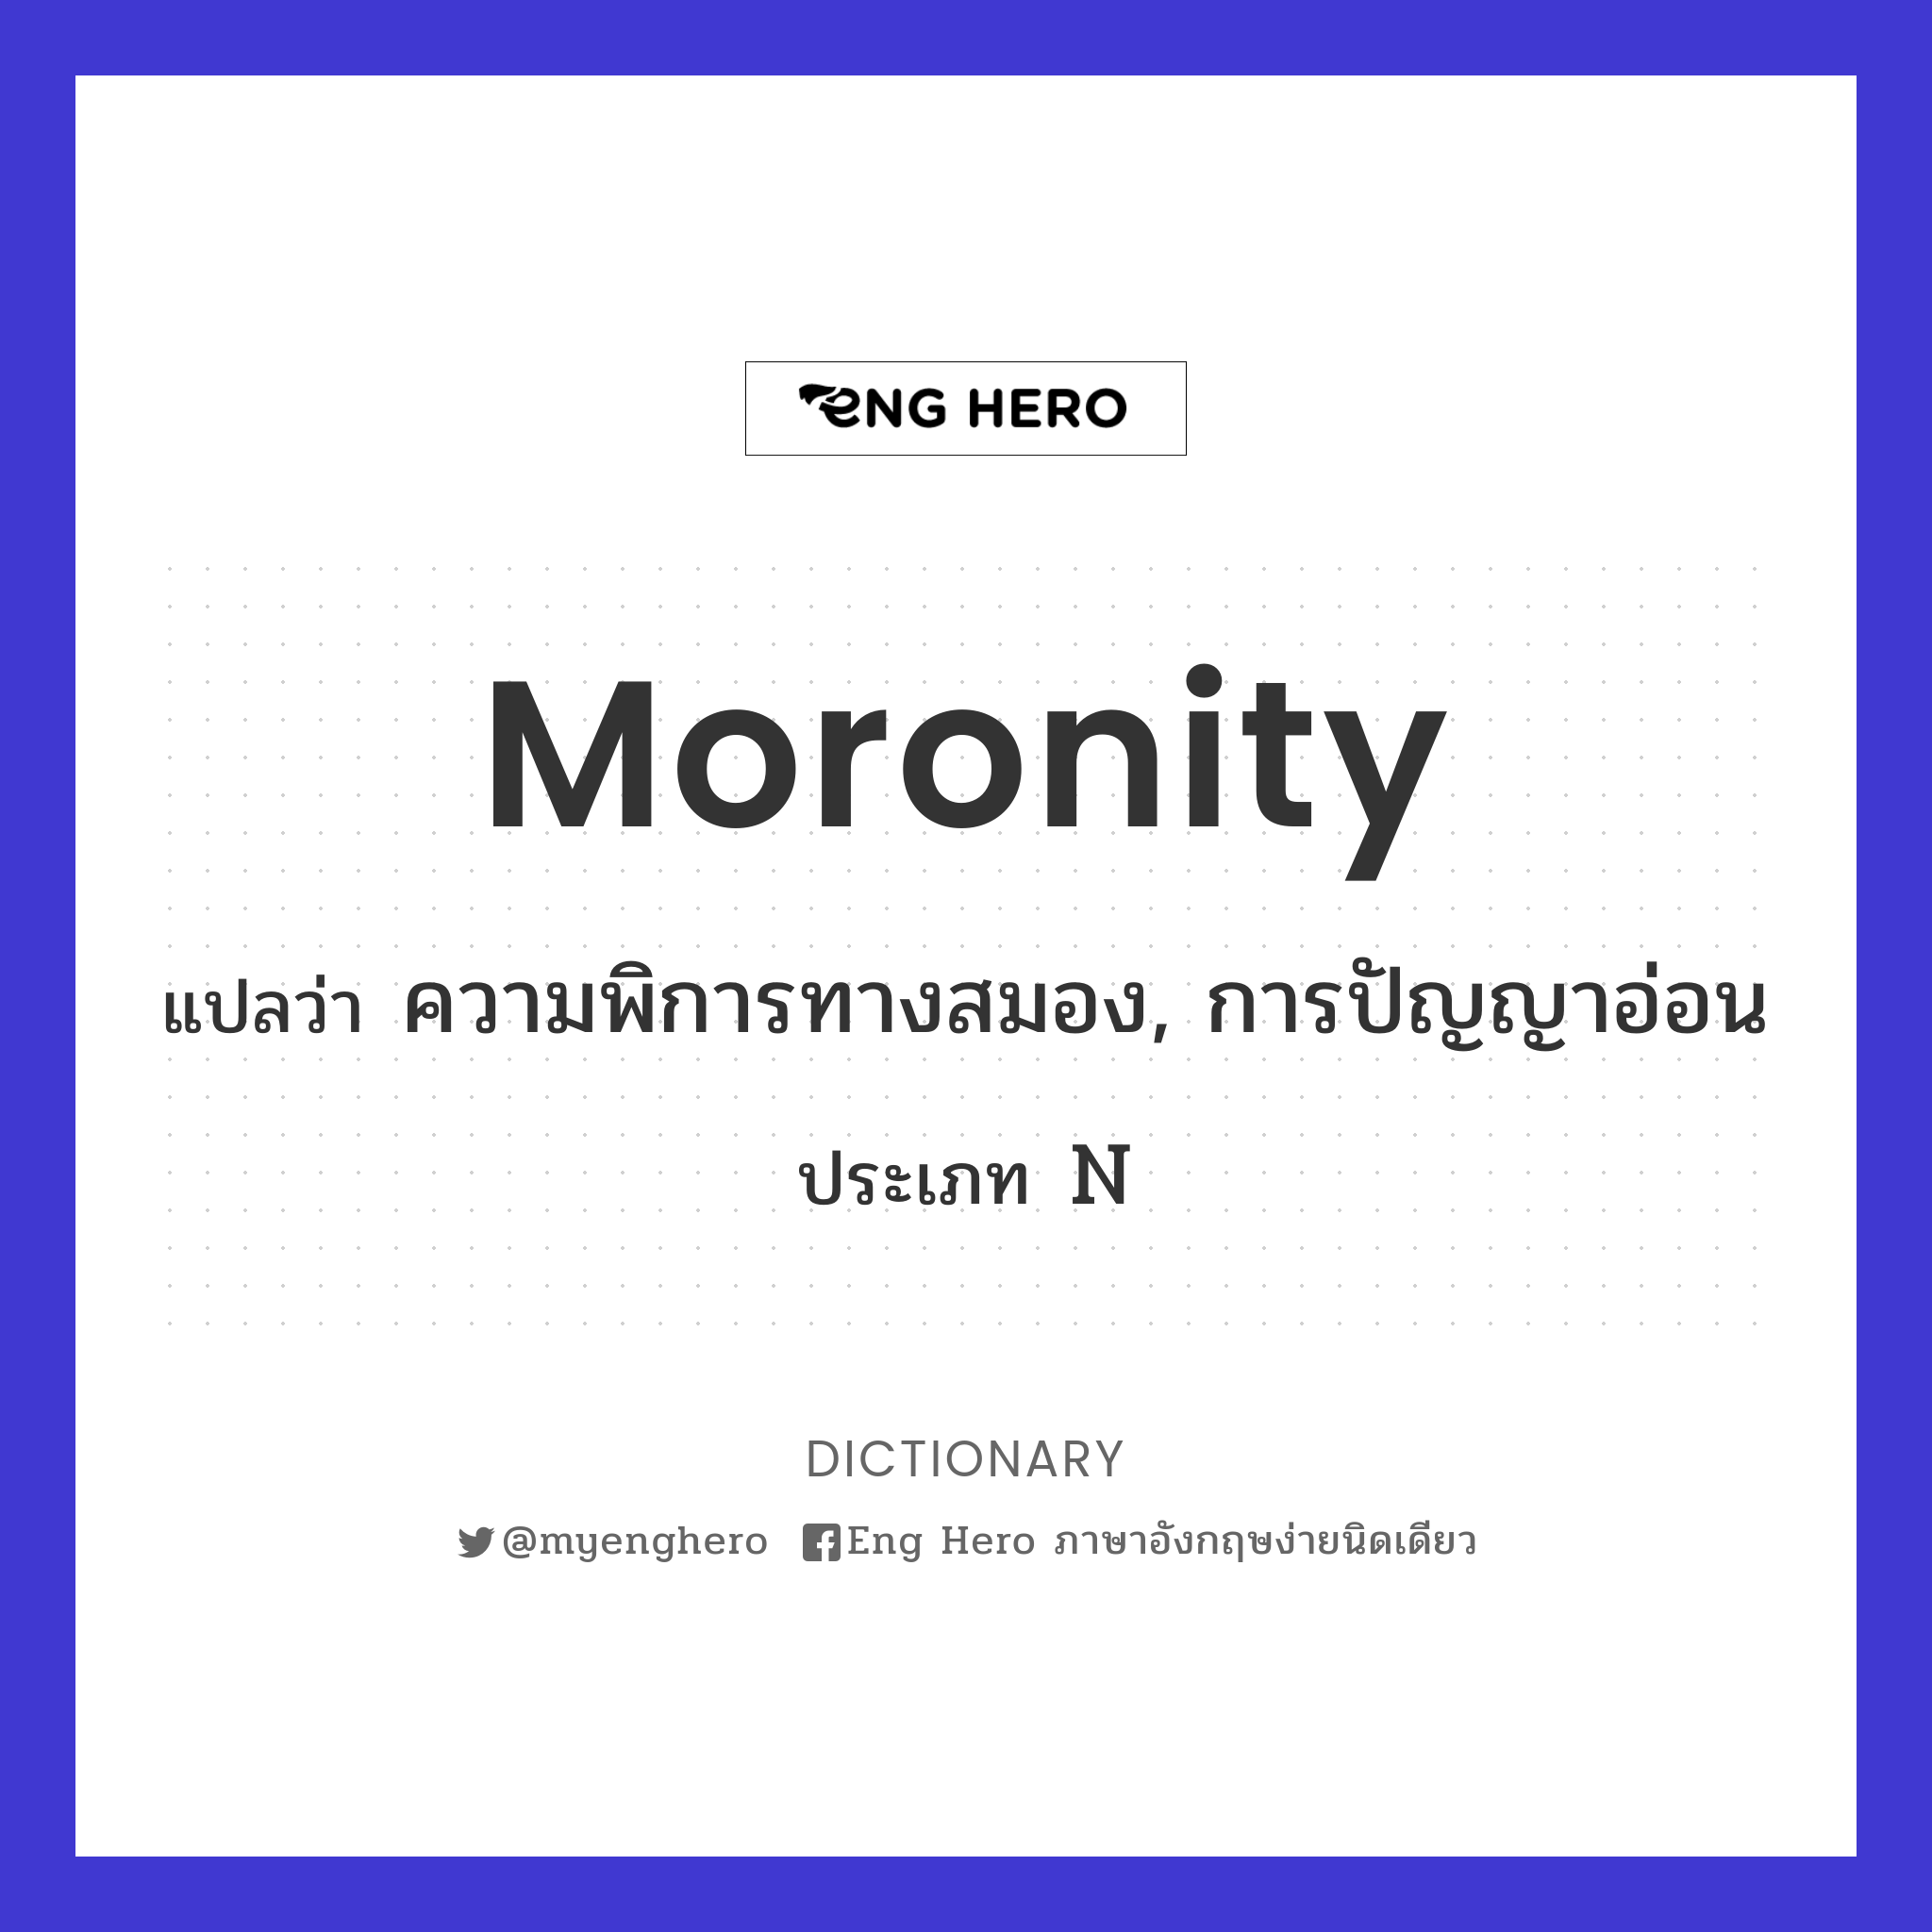 moronity